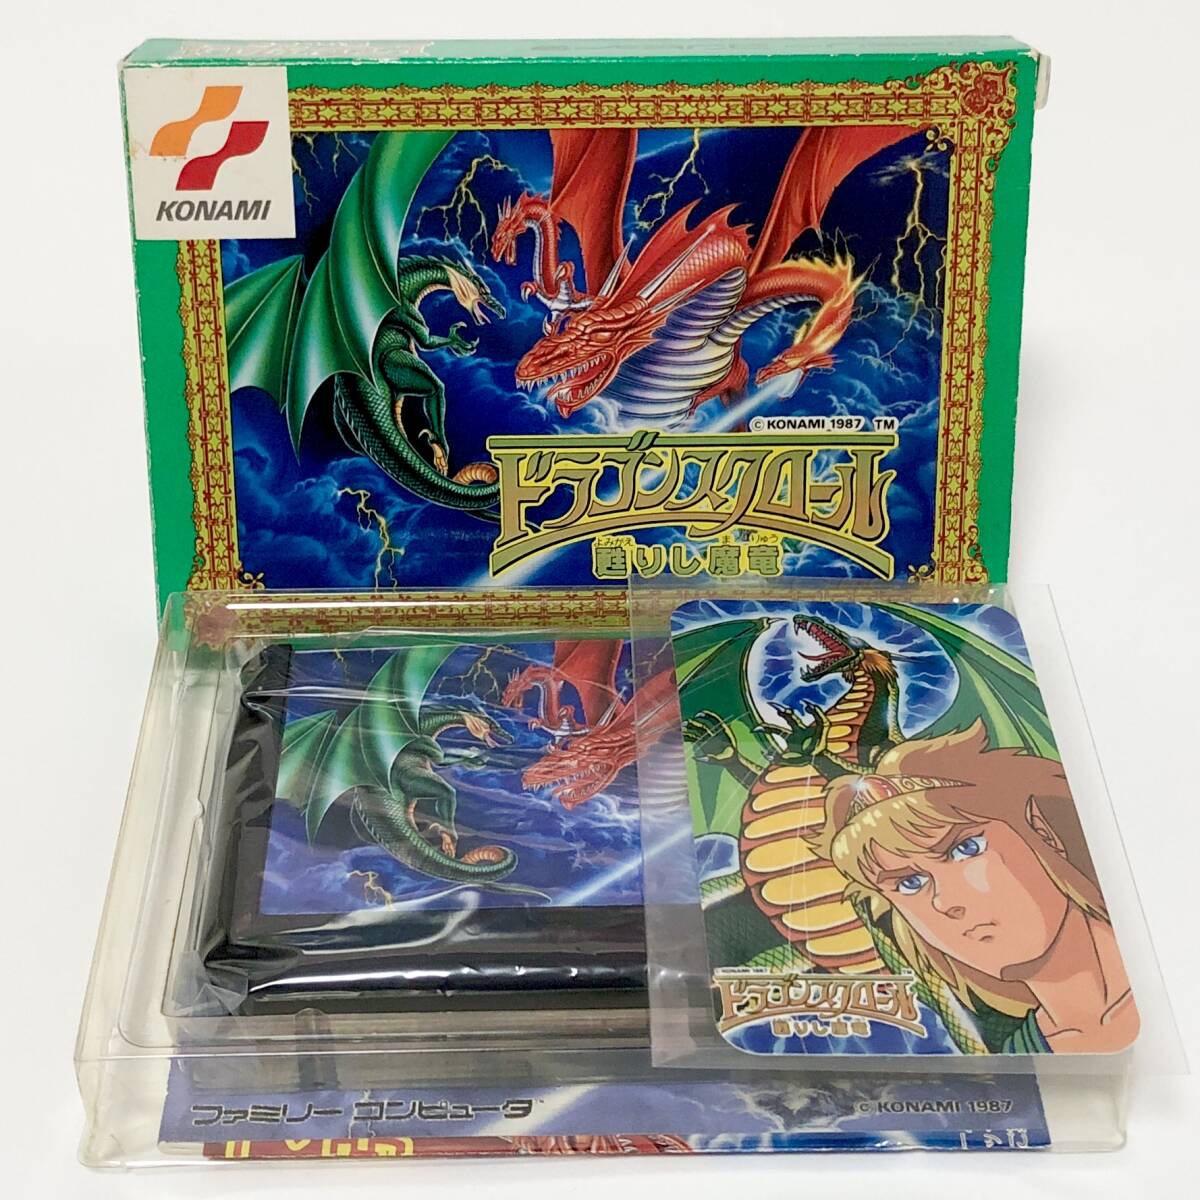 ファミコン ドラゴンスクロール 甦りし魔竜 箱説付き カード付き 痛みあり コナミ Nintendo Famicom Dragon Scroll CIB Tested Konamiの画像1